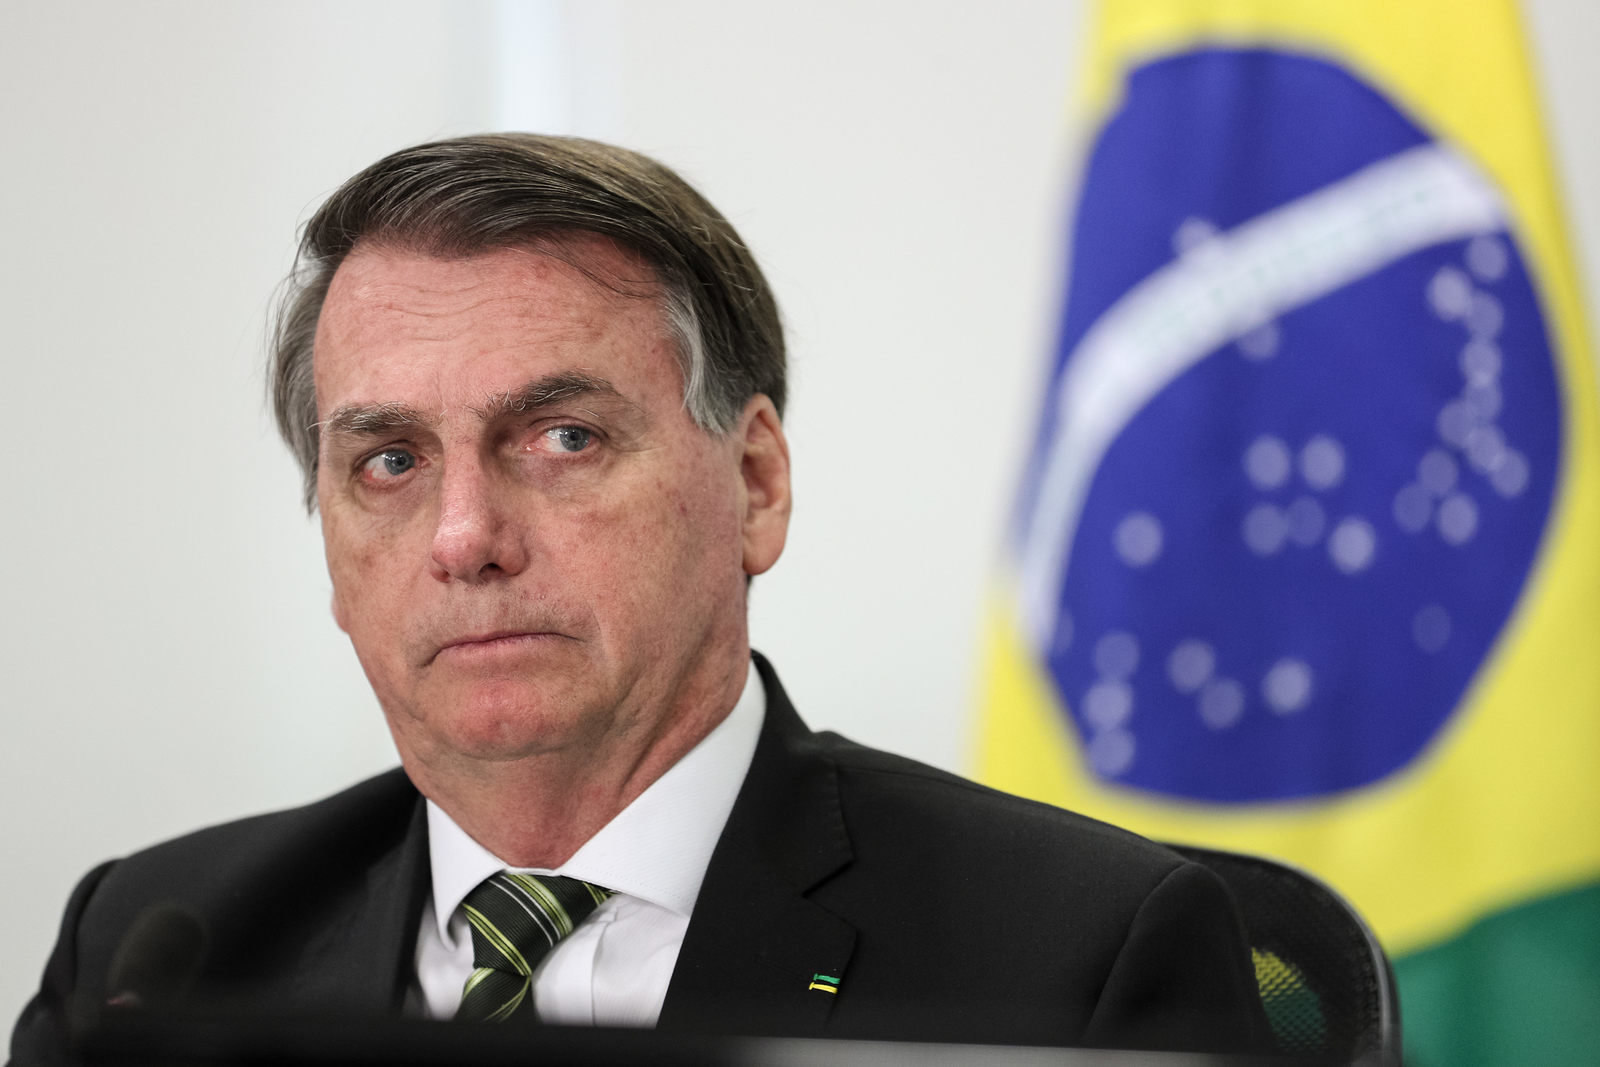 Ambições pessoais, diz Bolsonaro a respeito de debandada